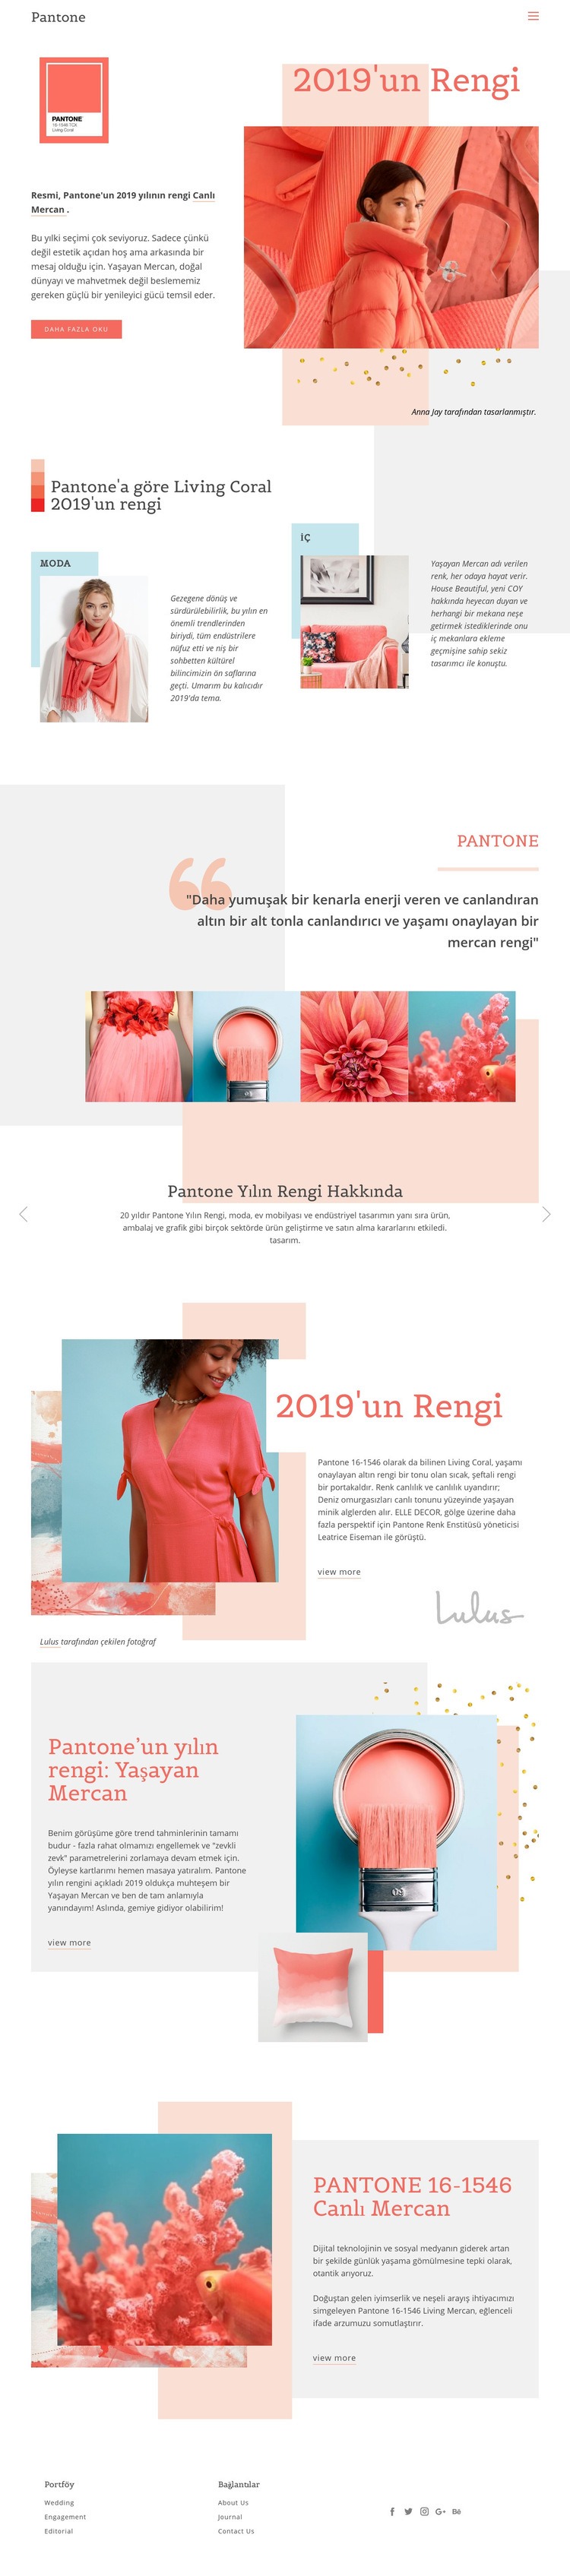 2019'un rengi Web Sitesi Mockup'ı